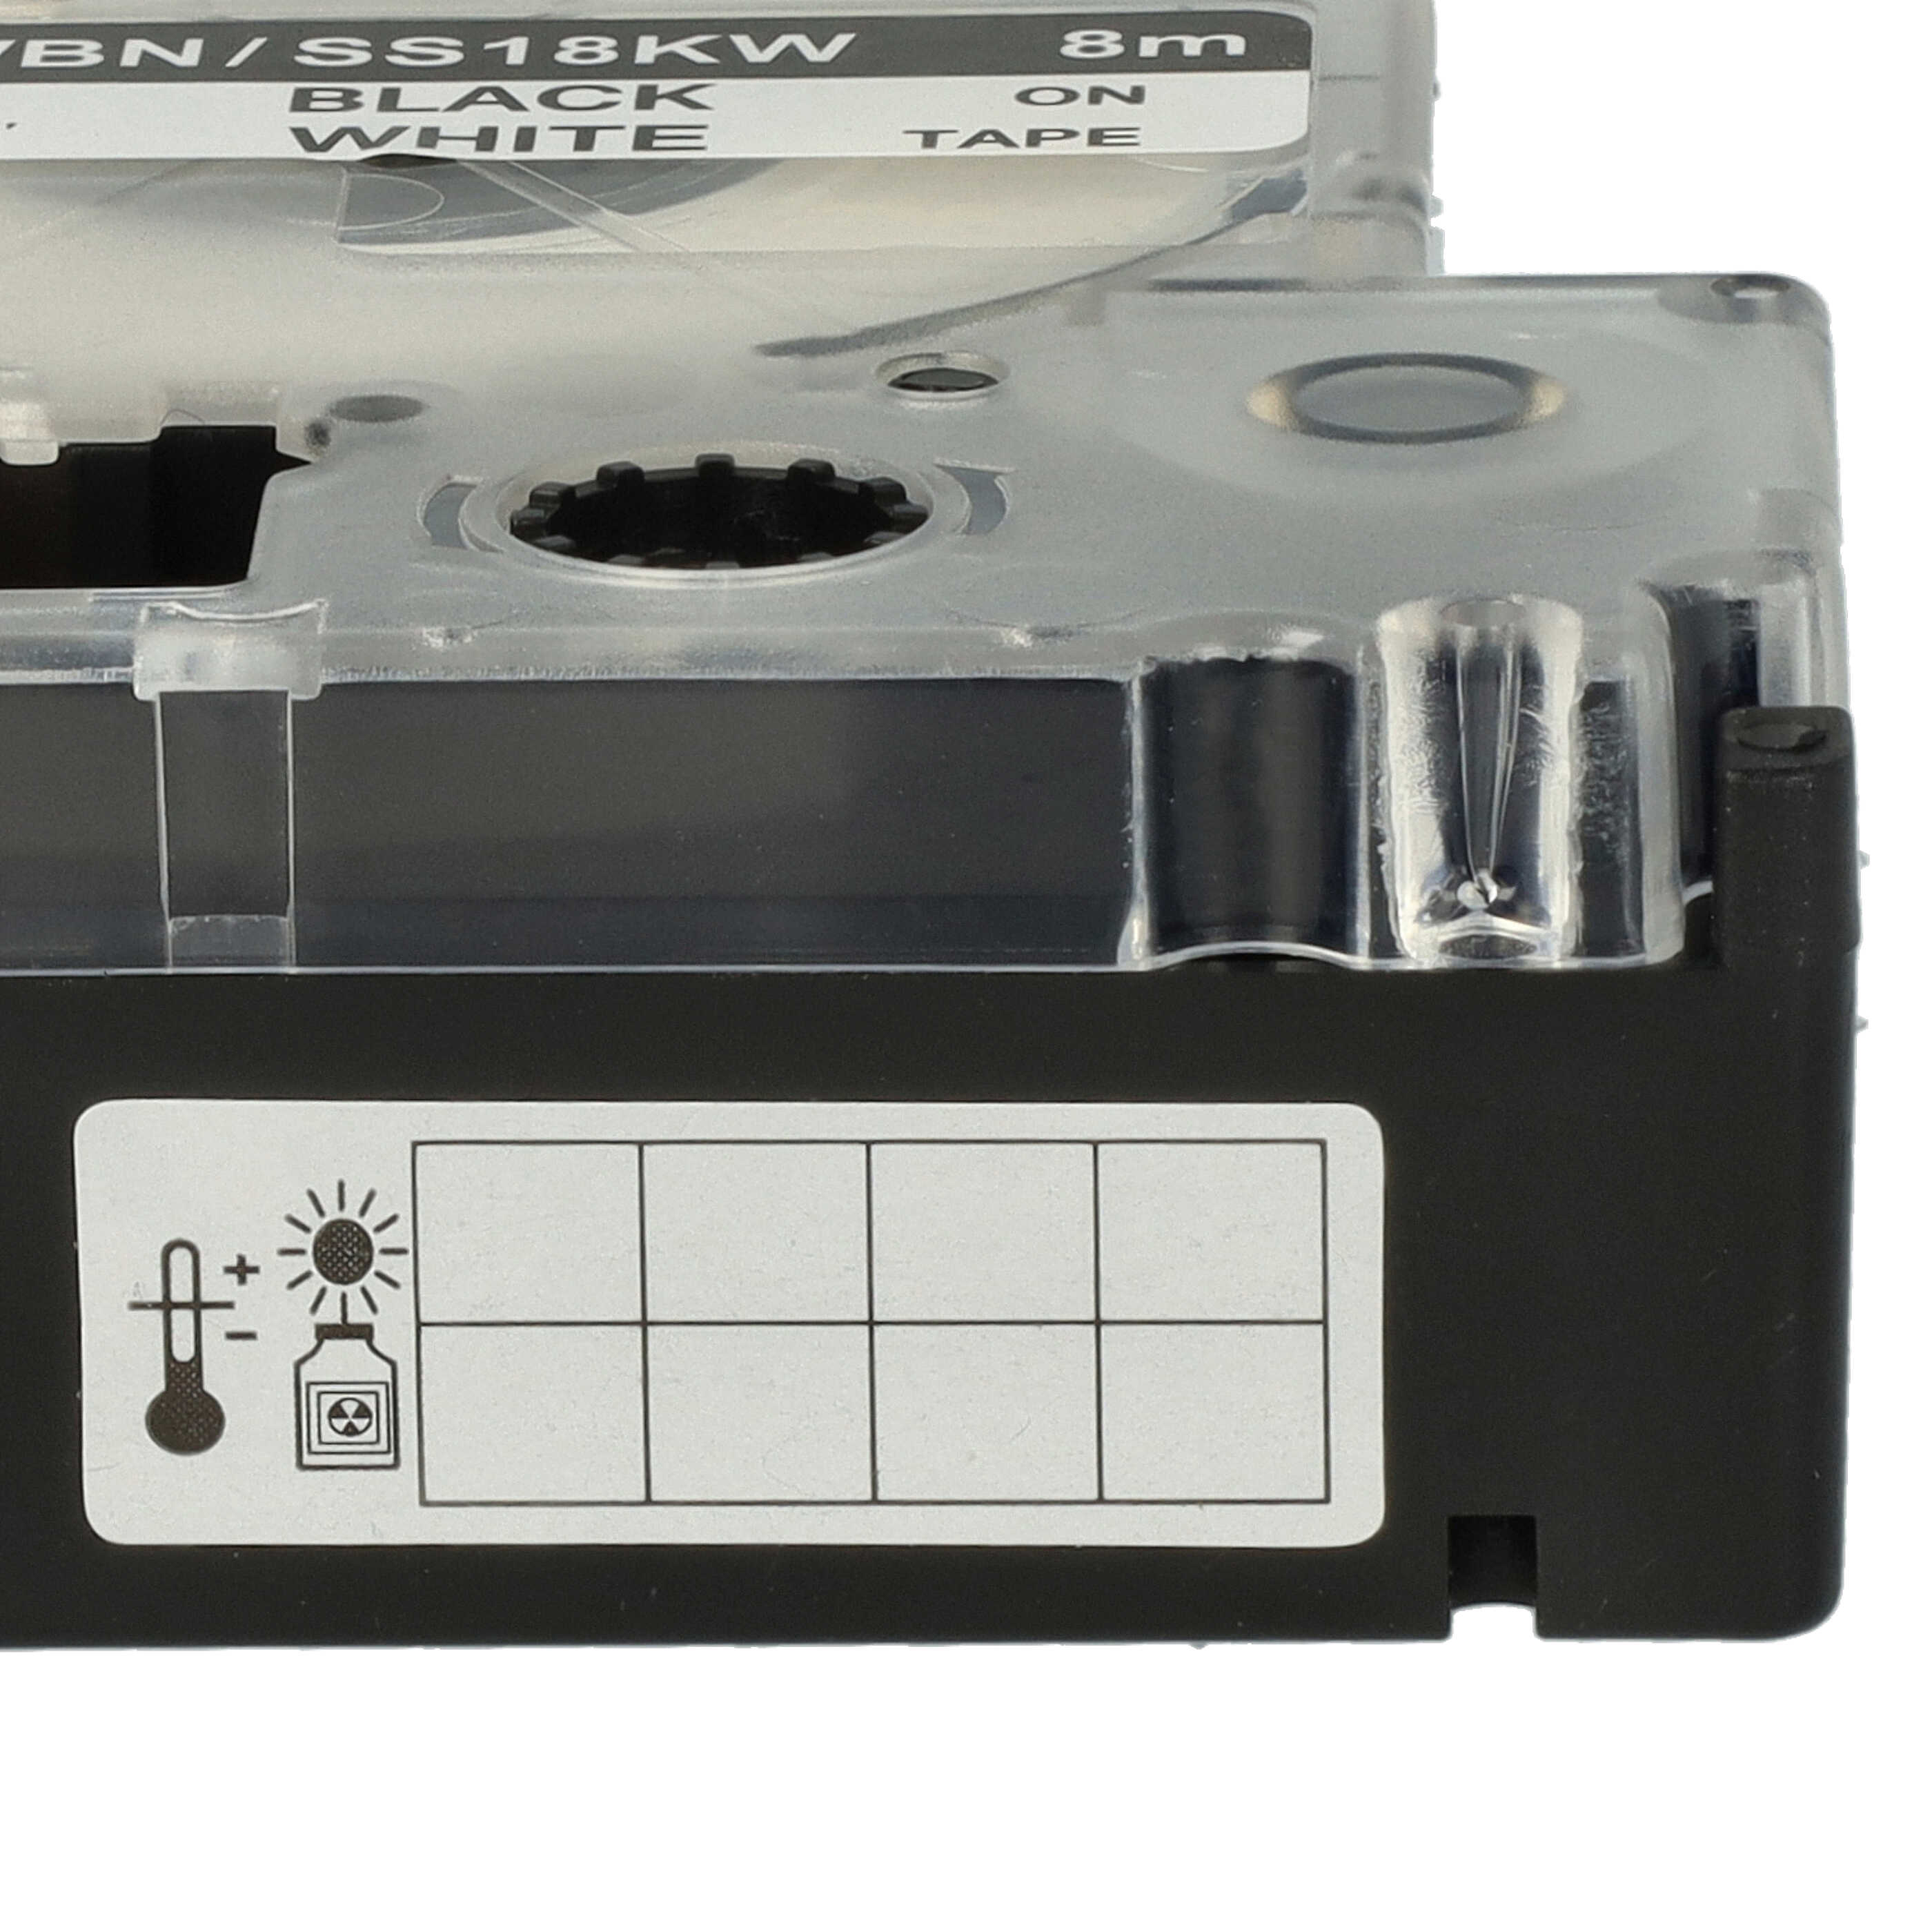 5x Schriftband als Ersatz für Epson SS18KW, LC-5WBN - 18mm Schwarz auf Weiß